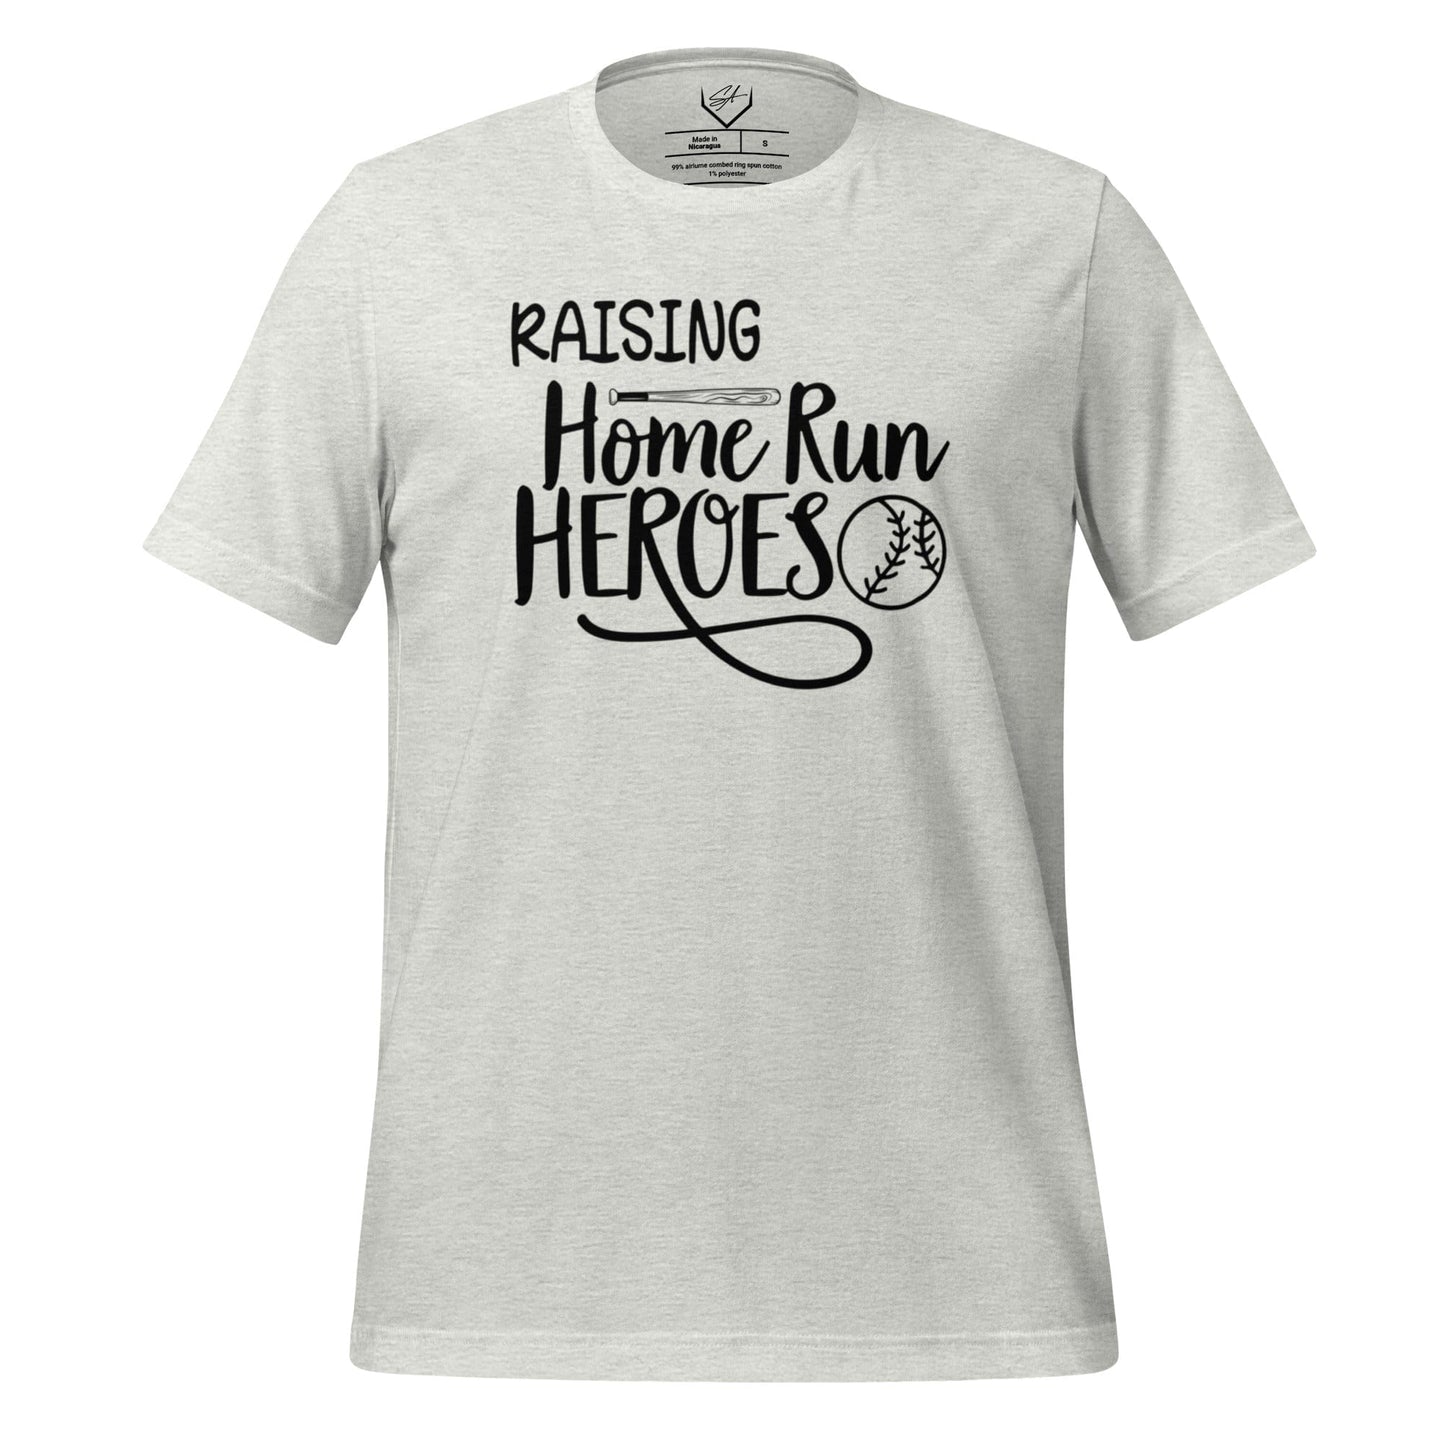 Raising Home Run Heroes - Adult Tee